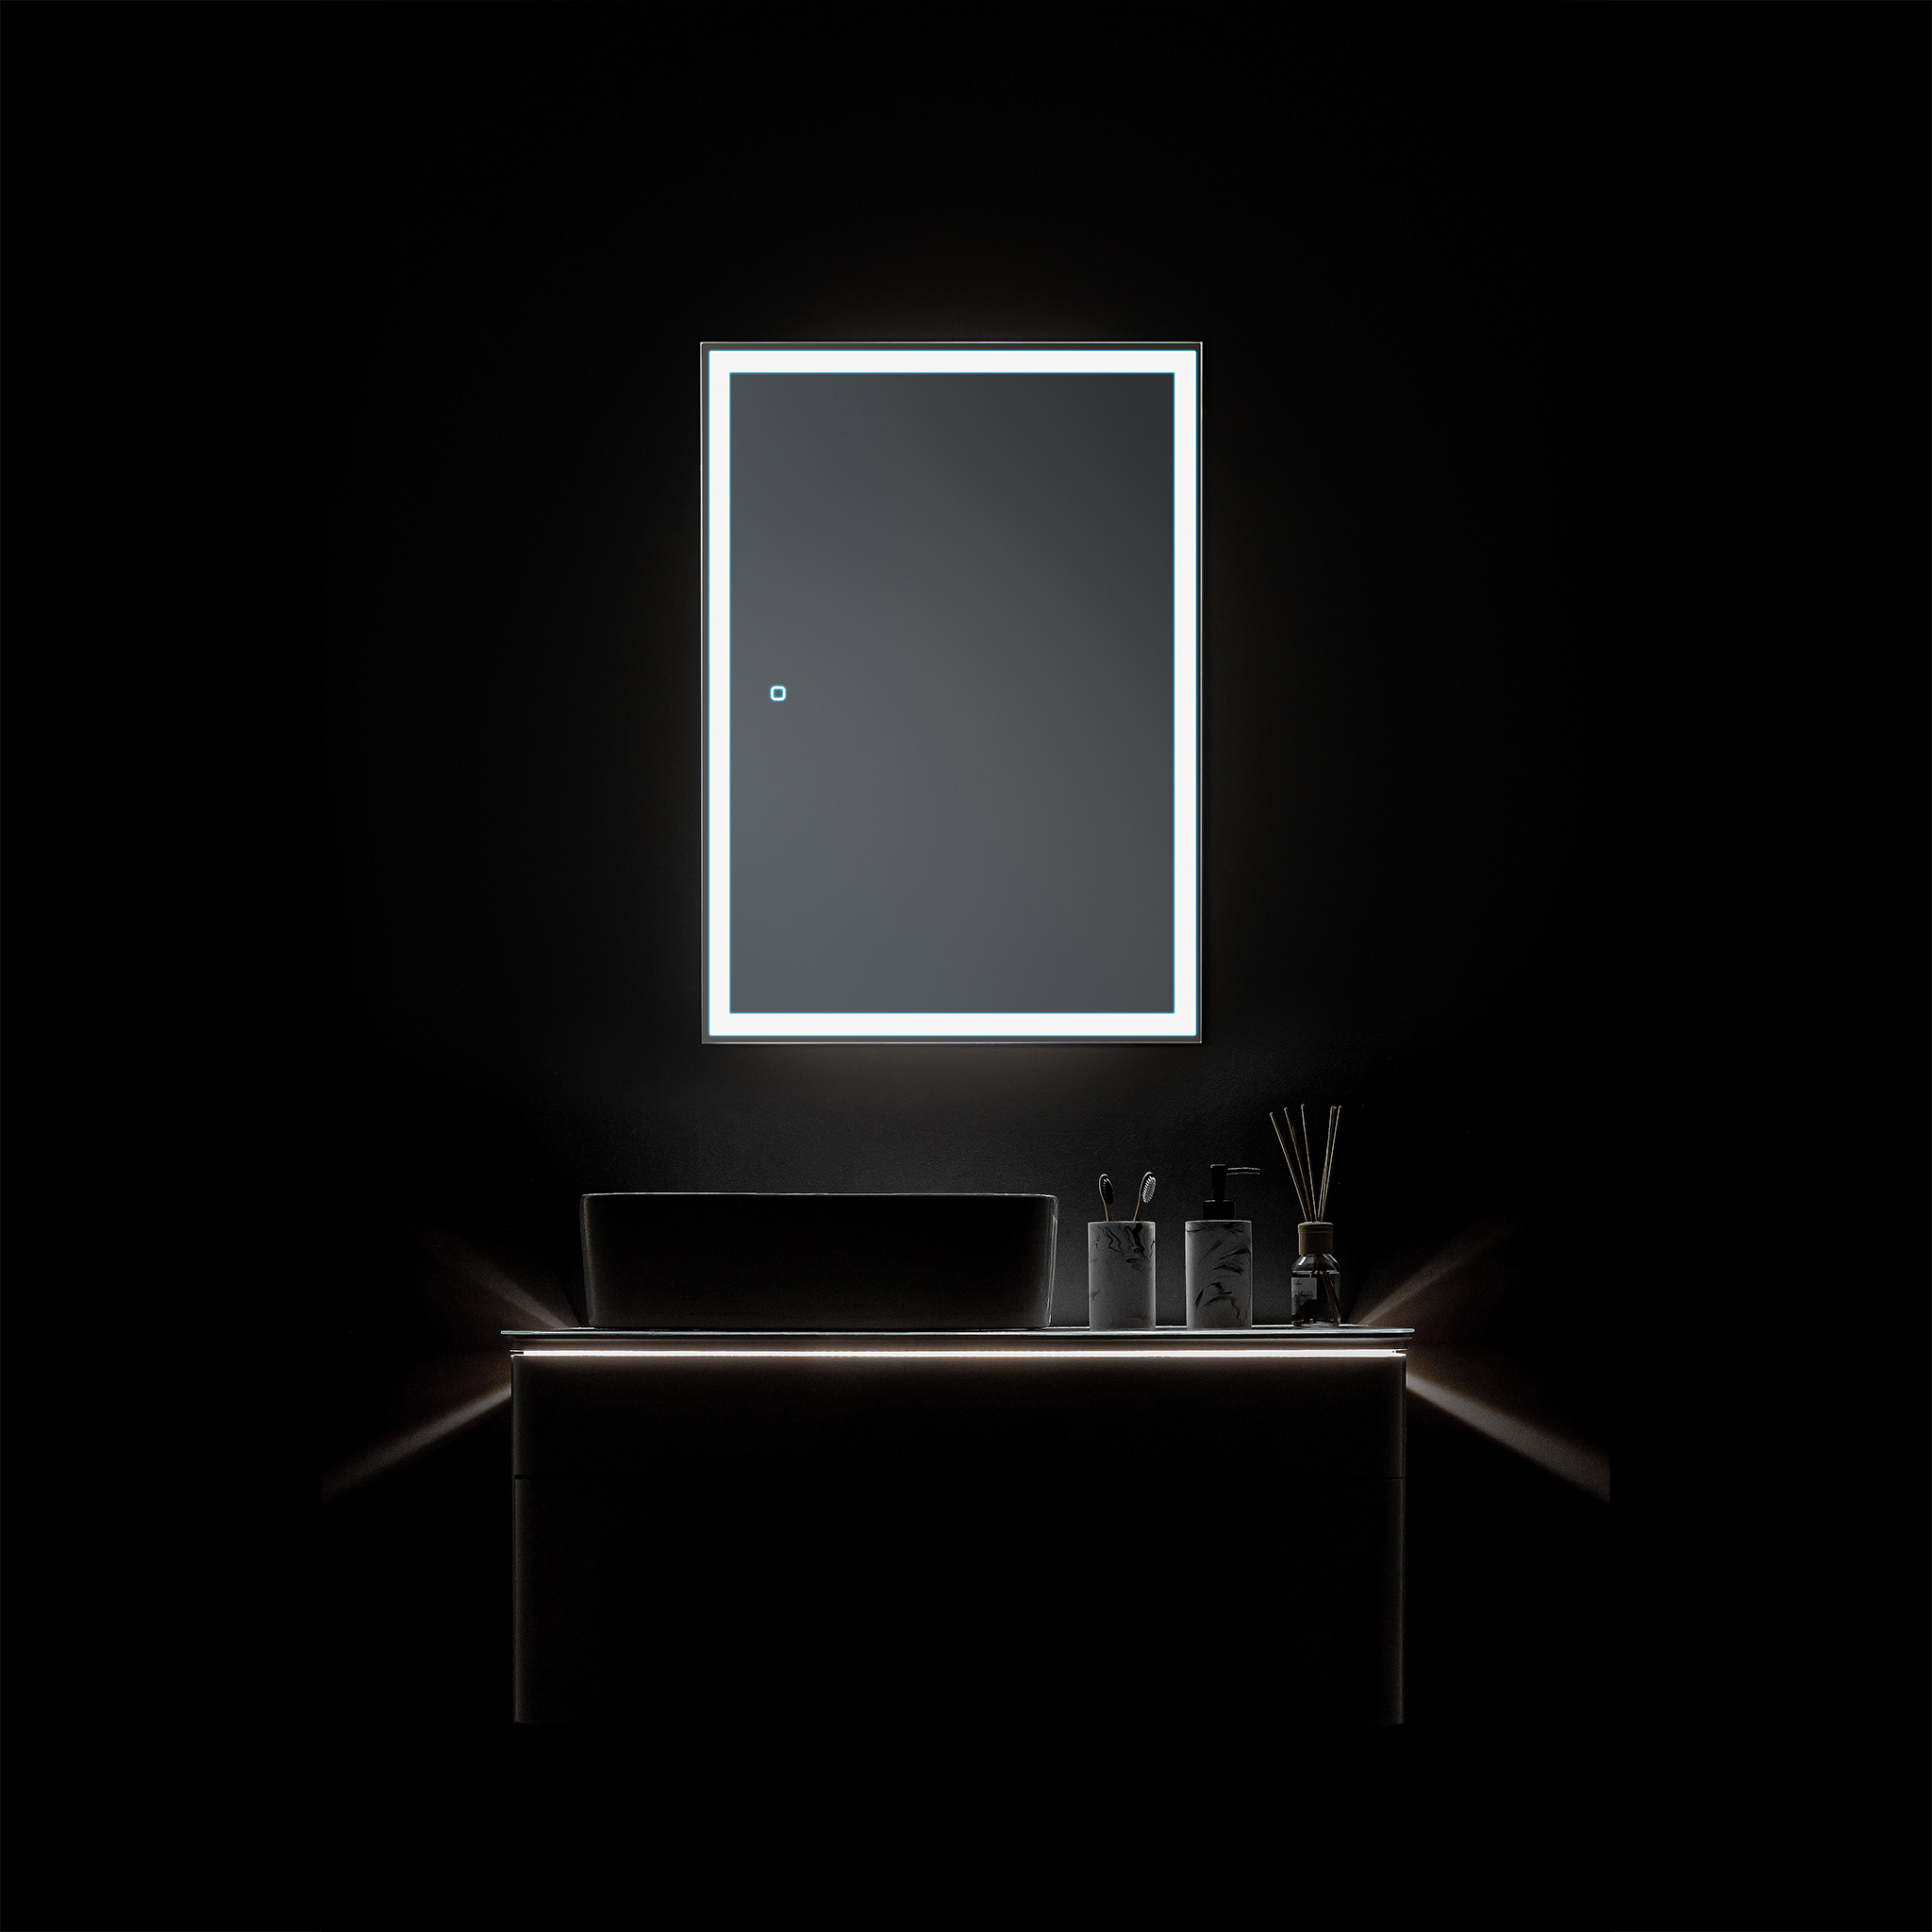 Зеркальный шкаф киото 60 см с часами и сменной подсветкой теплый и нейтральный